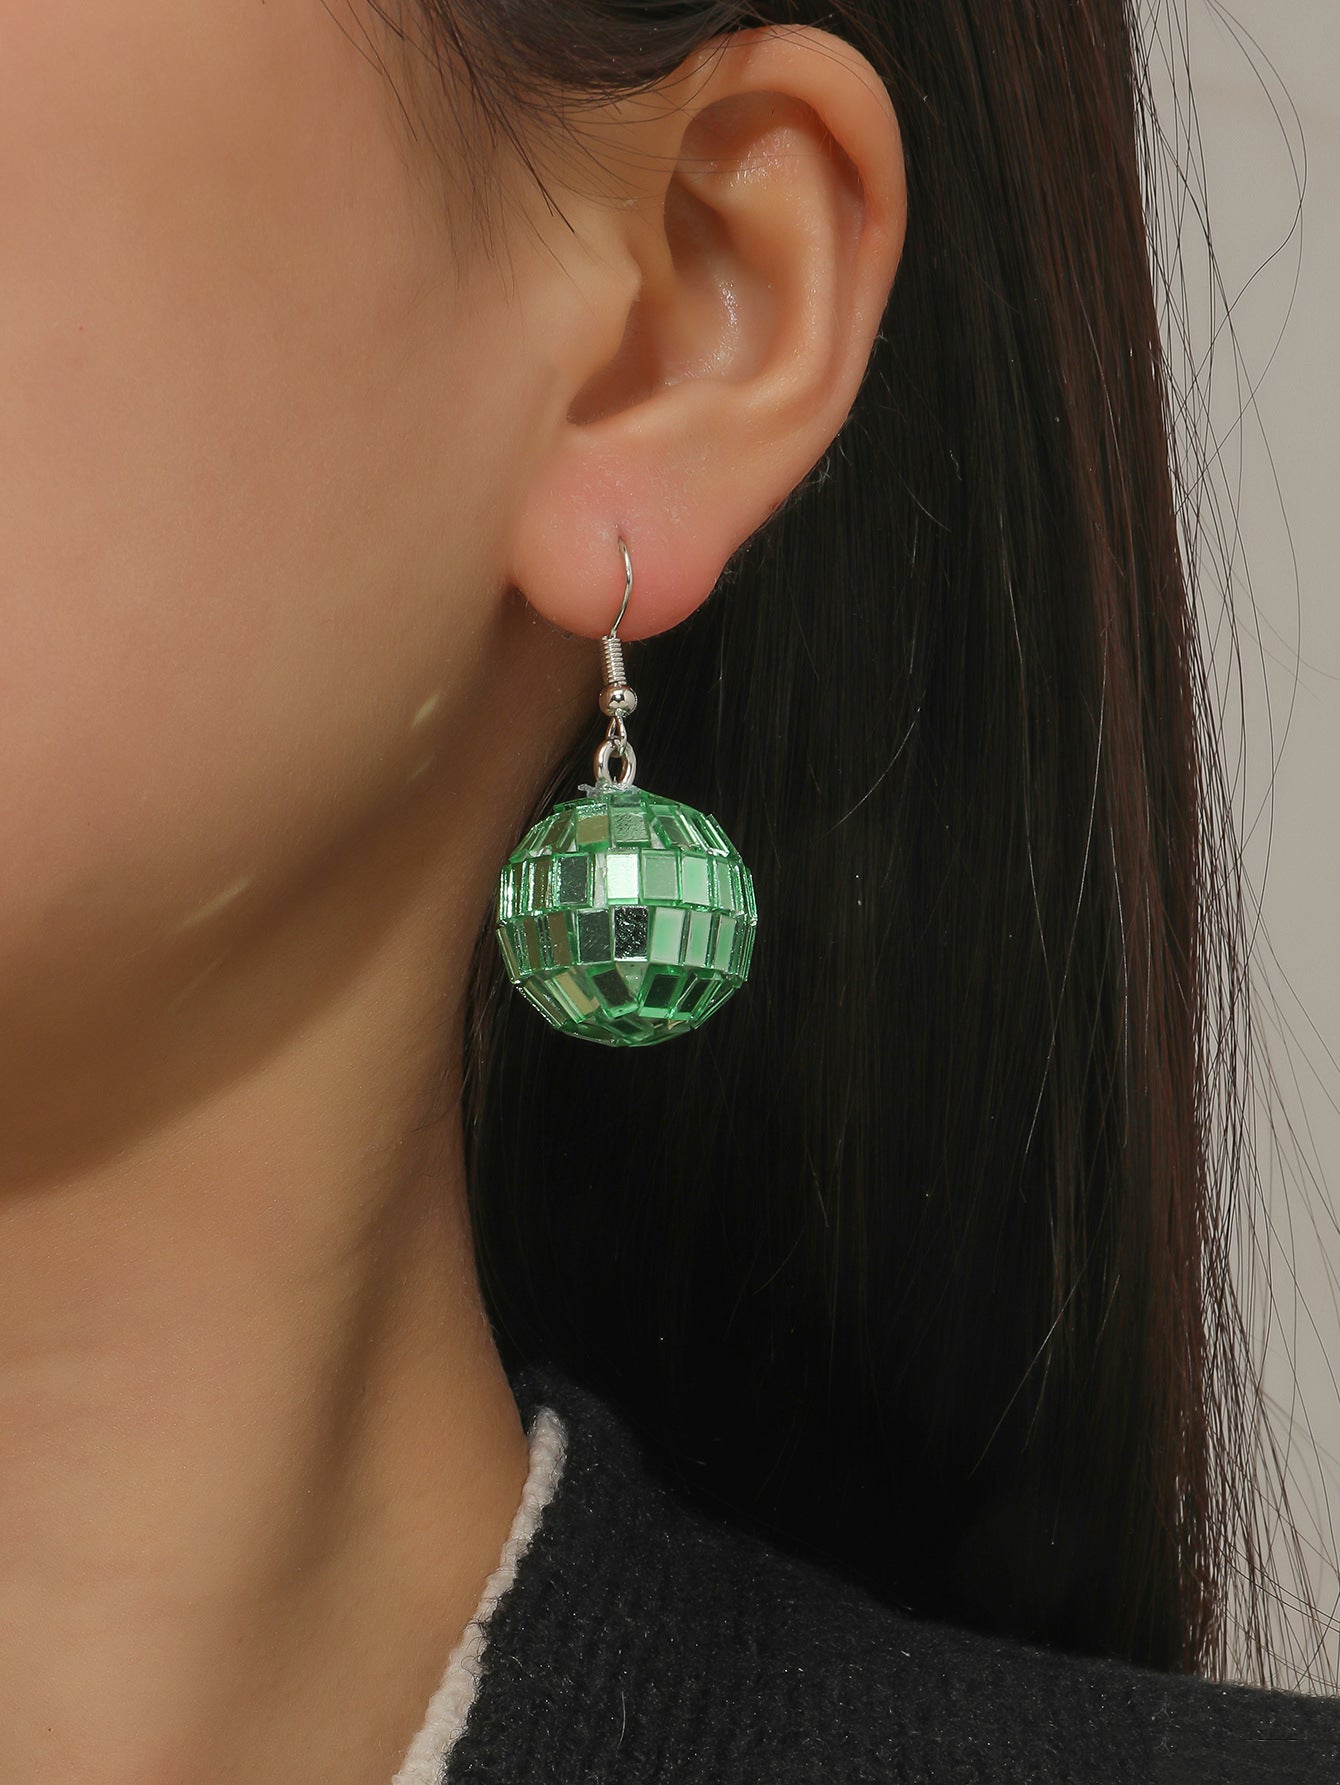 green mirror ball earrings, taylor swift style